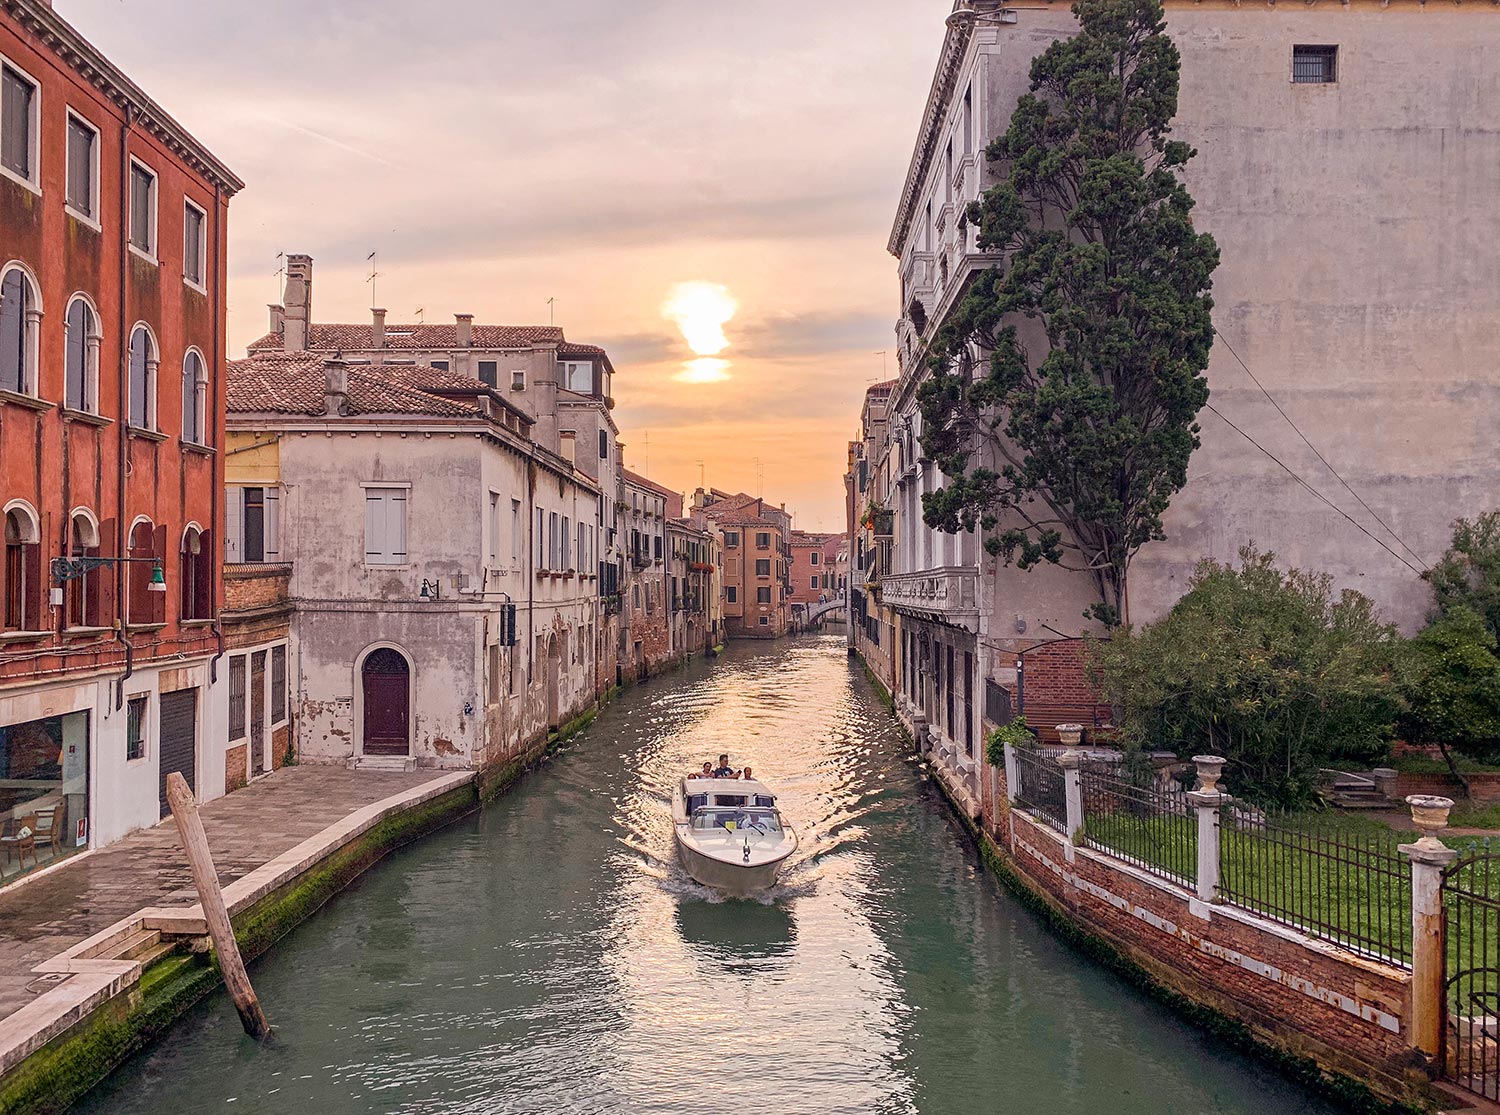 Canal, Venise, Italie / Canal, Venice, Italy